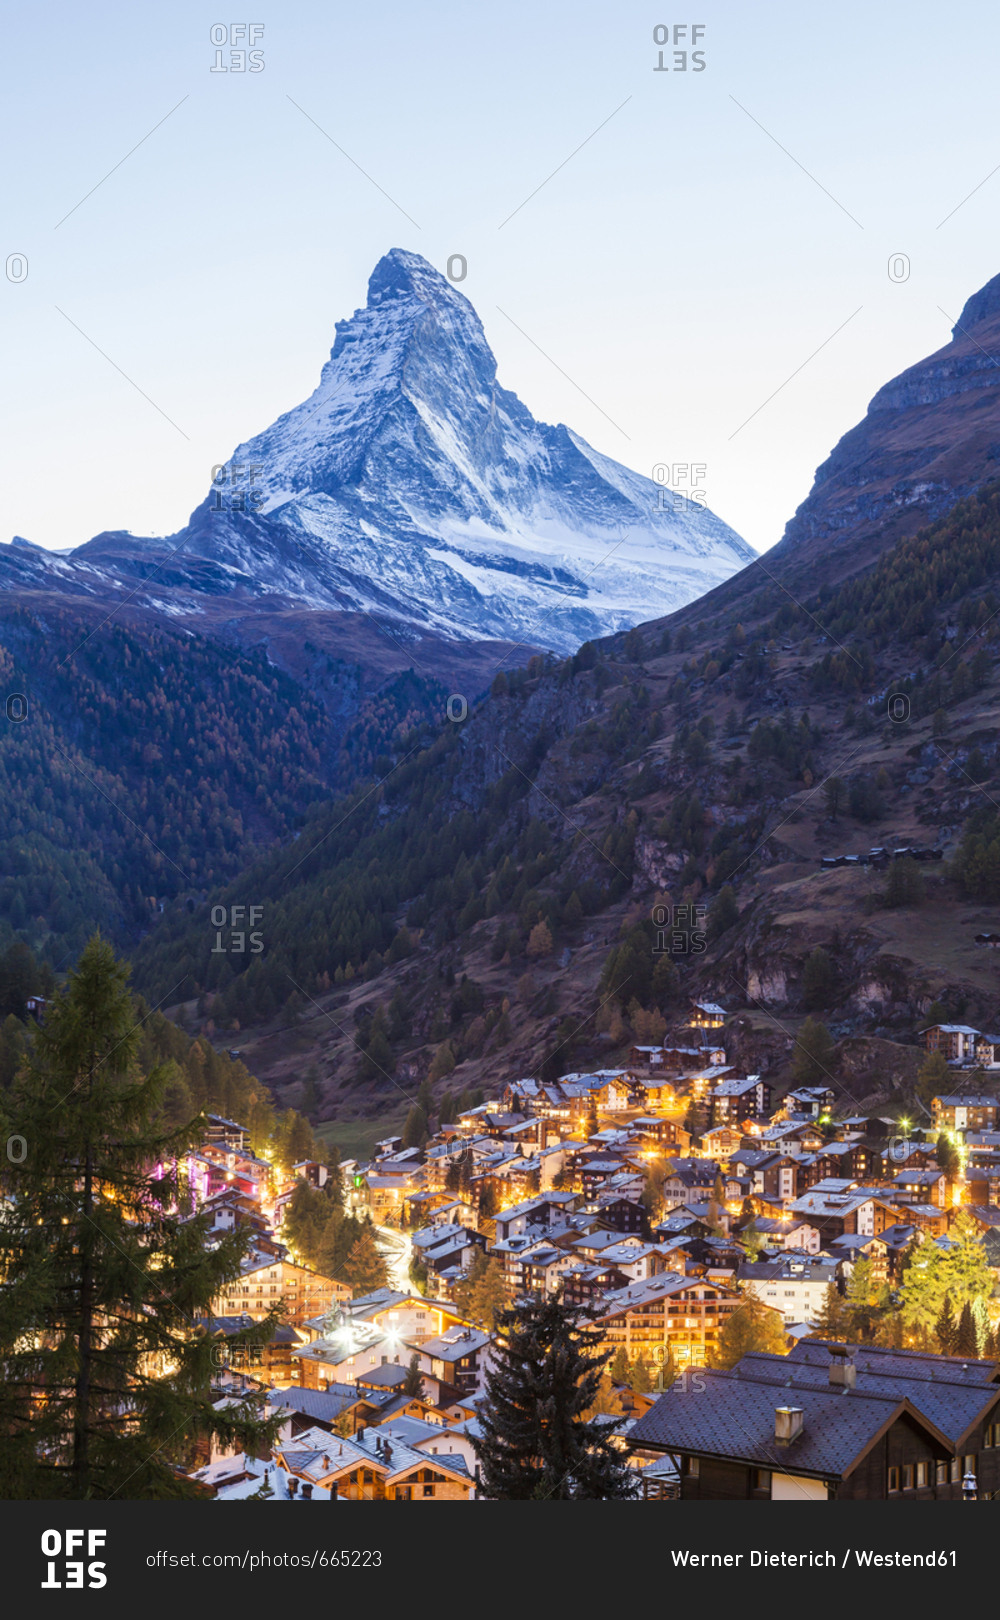 Switzerland- Valais- Zermatt- Matterhorn- townscape- chalets- holiday homes in the evening